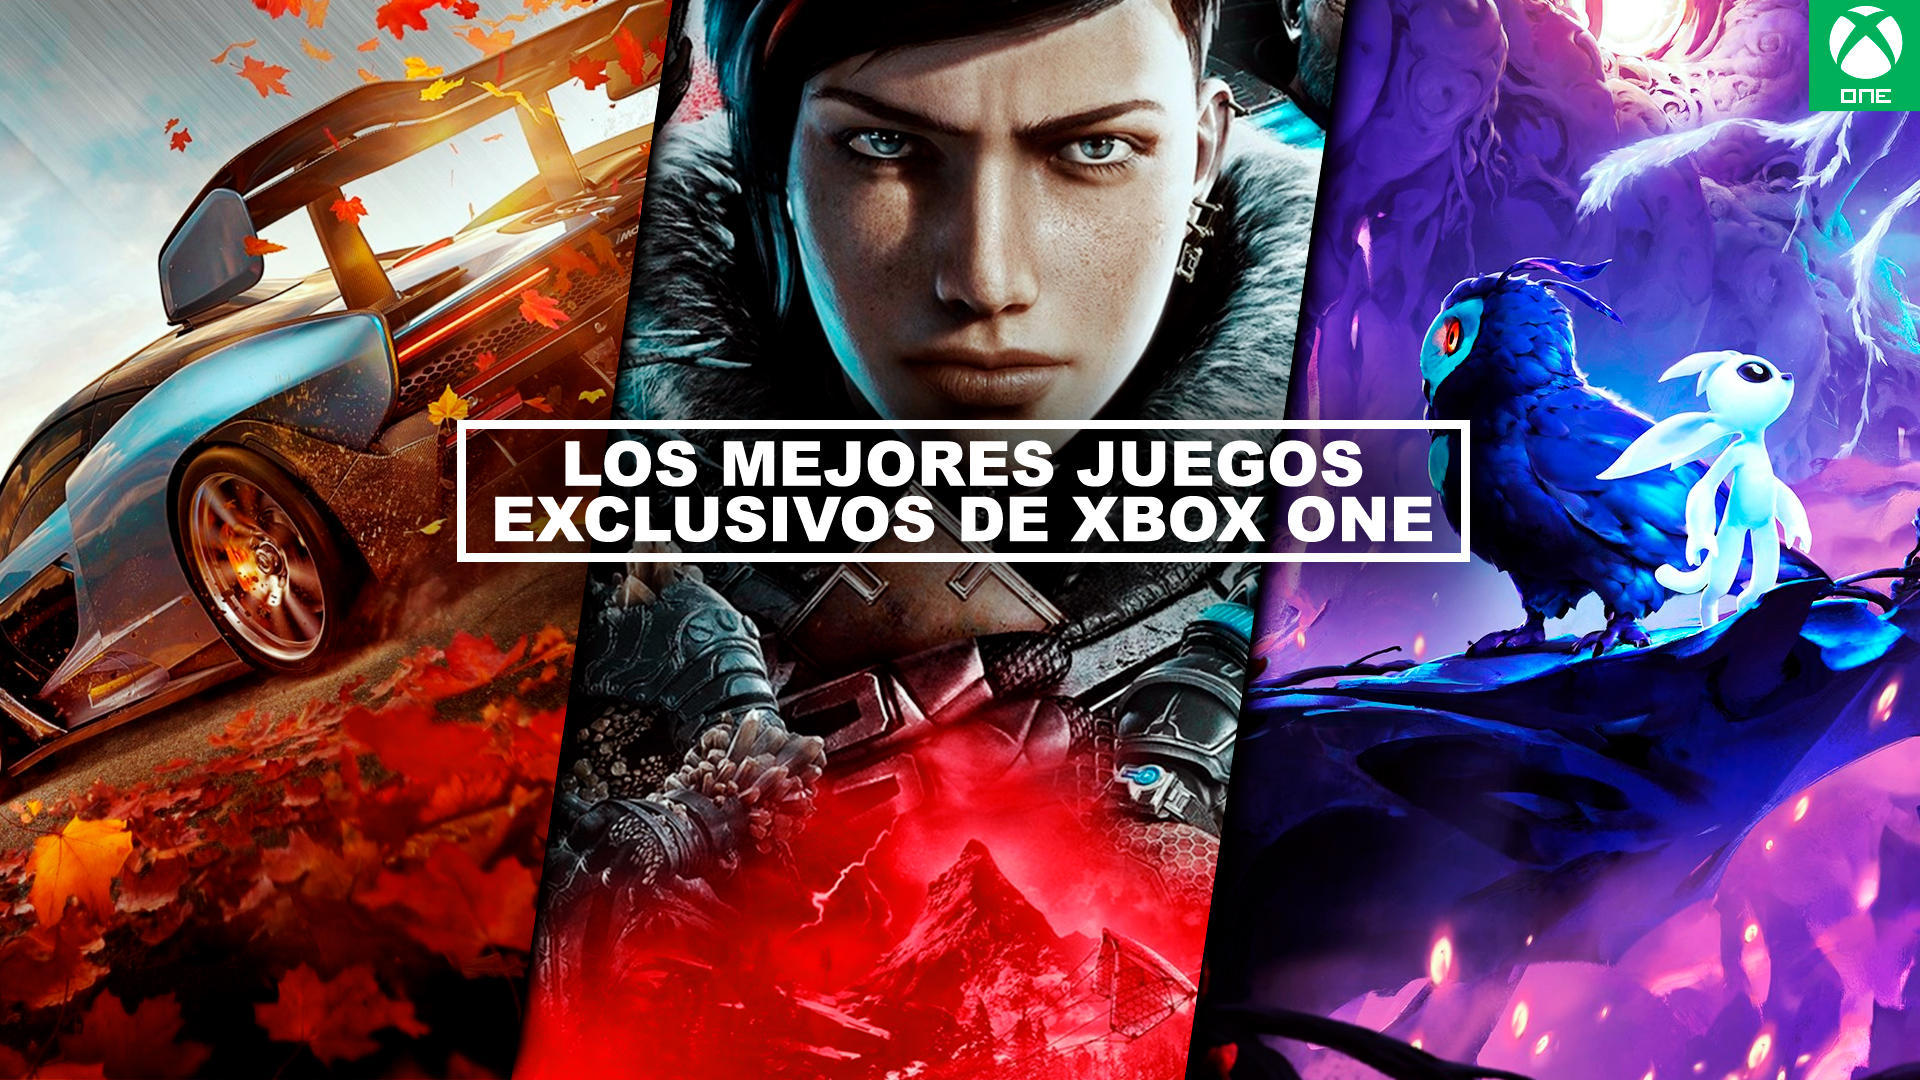 Feudal ir a buscar Limo Los MEJORES juegos exclusivos de Xbox One - ¡Imprescindibles! (2021)